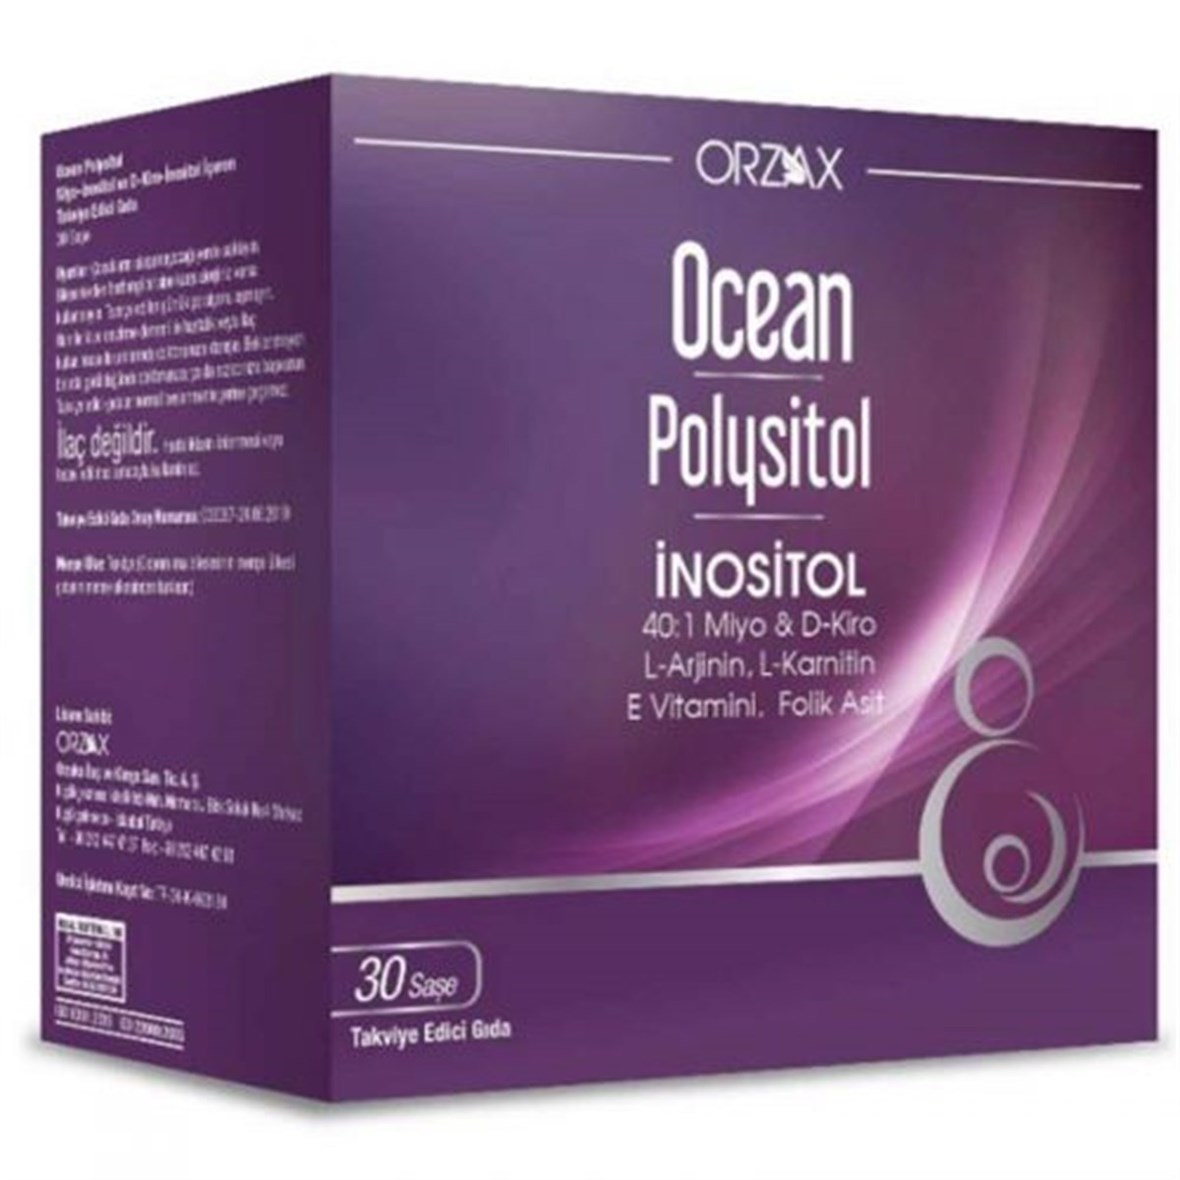 Orzax Ocean Polysitol Takviye Edici Gıda 30 Saşe - Folik Asit 400 μg  Eczasepeti.com'da En Uygun Fiyatlar ve Yorumlar